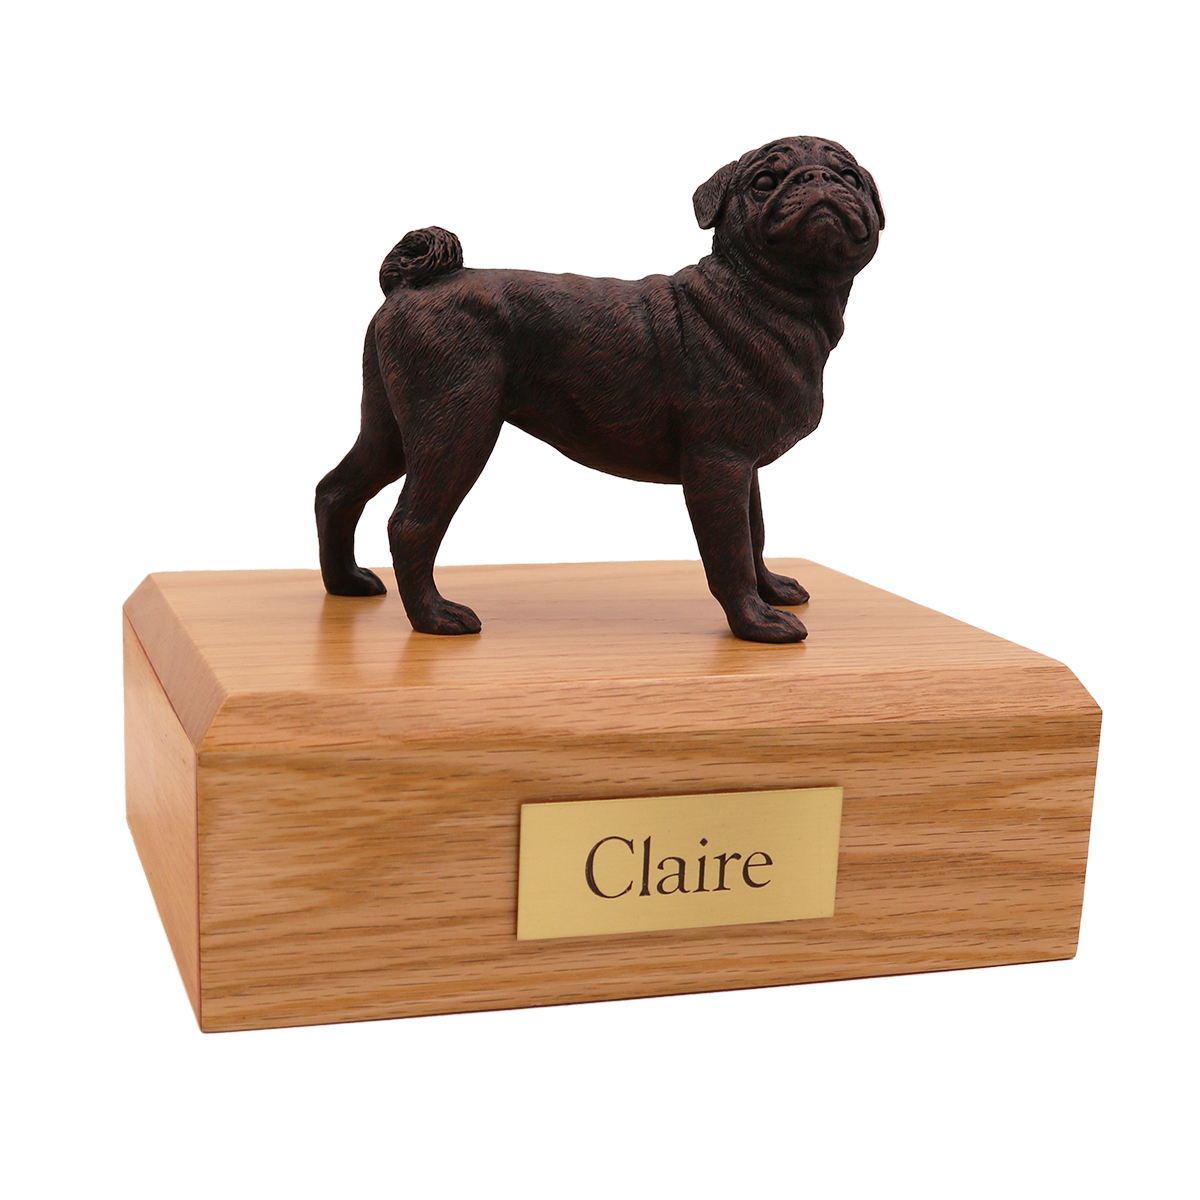 Dog, Pug, Bronze - Figurine Urn